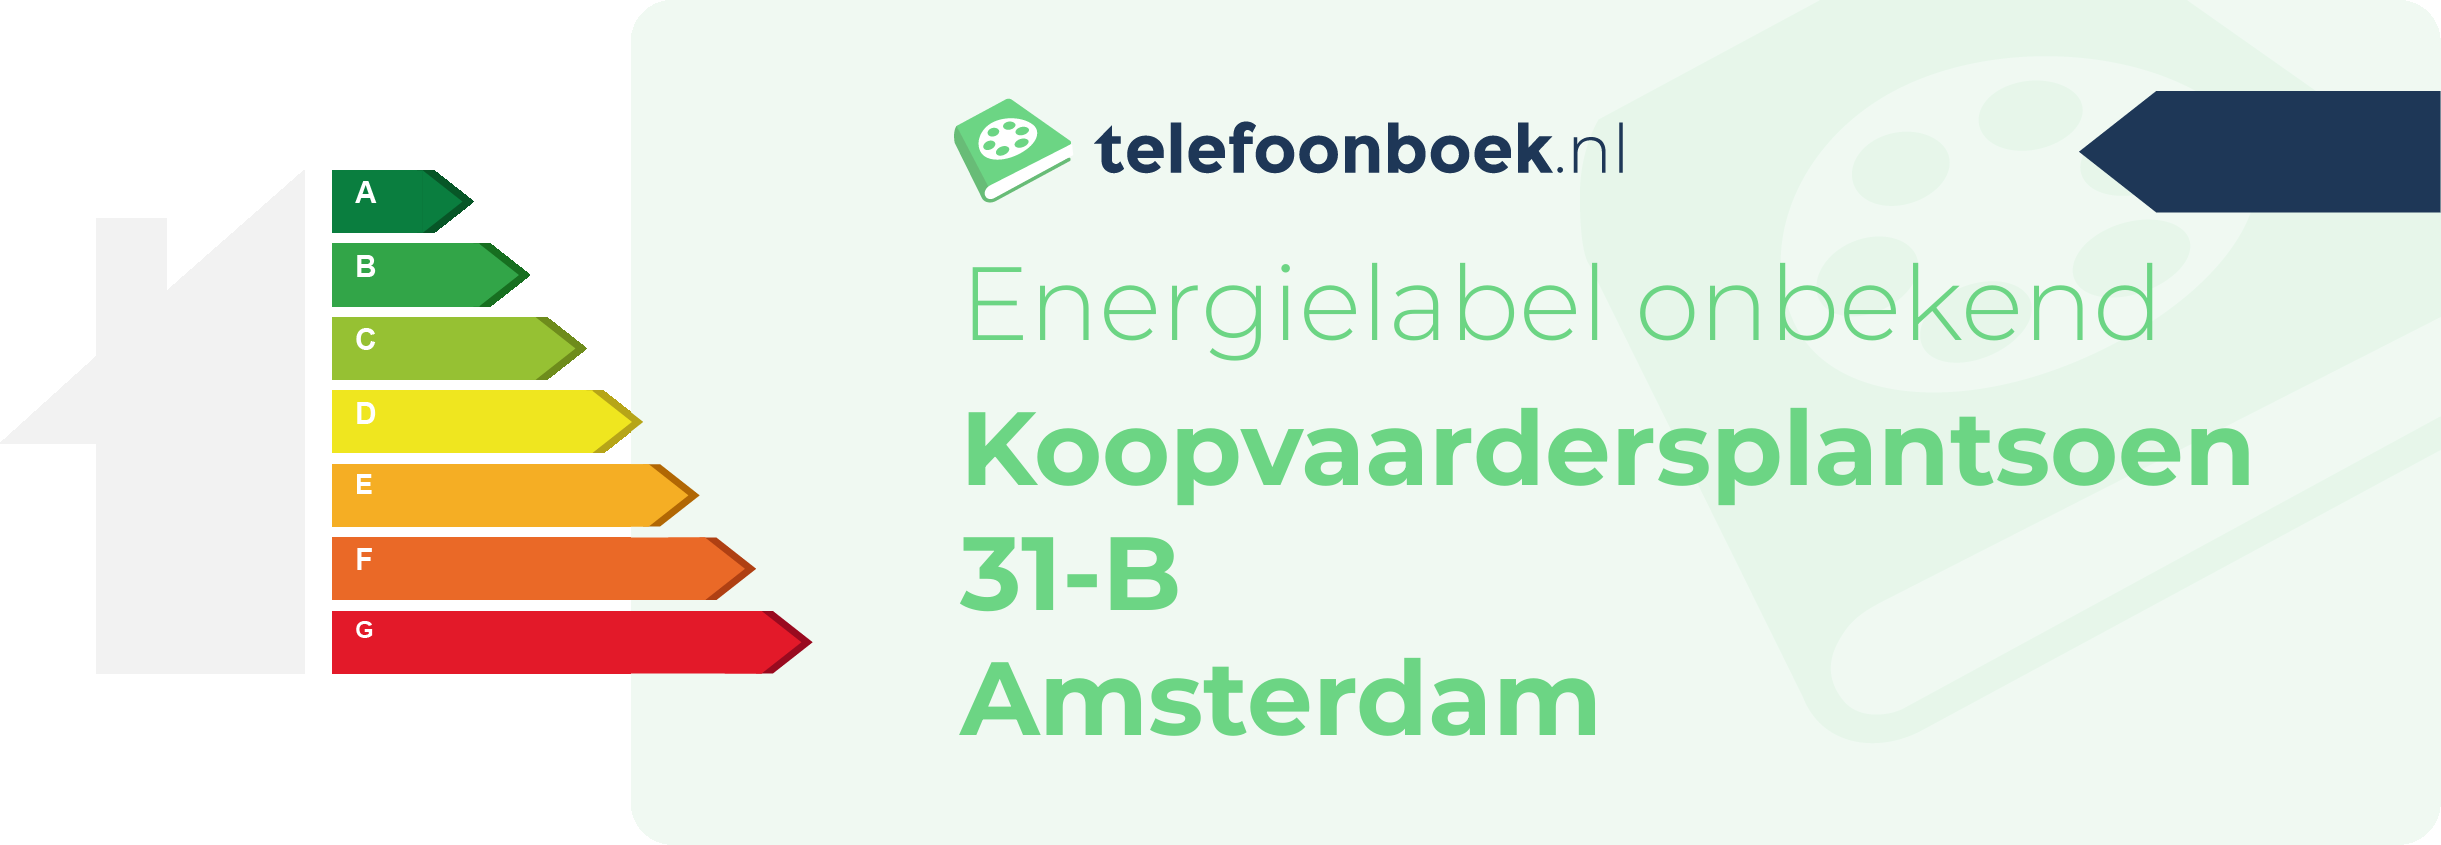 Energielabel Koopvaardersplantsoen 31-B Amsterdam